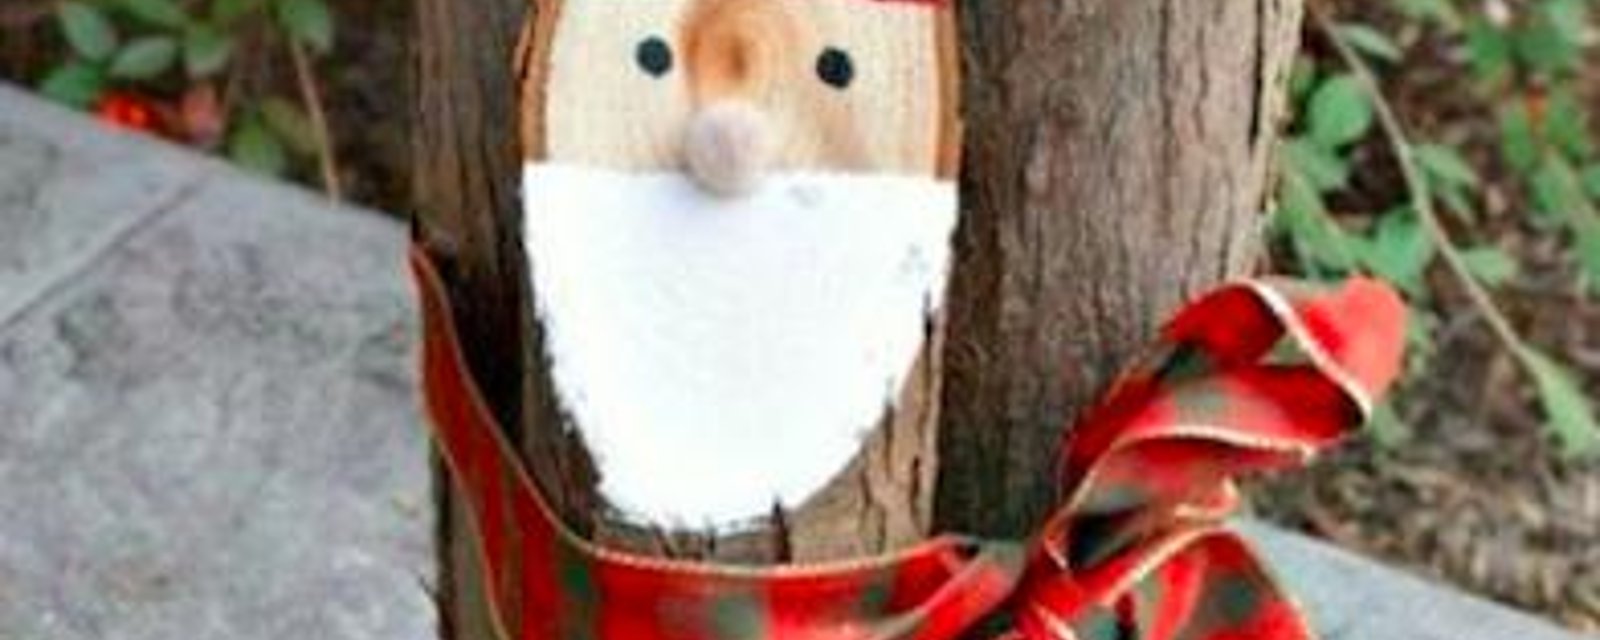 10 décorations de Noël faciles à faire à l'aide de vieilles bûches de bois!